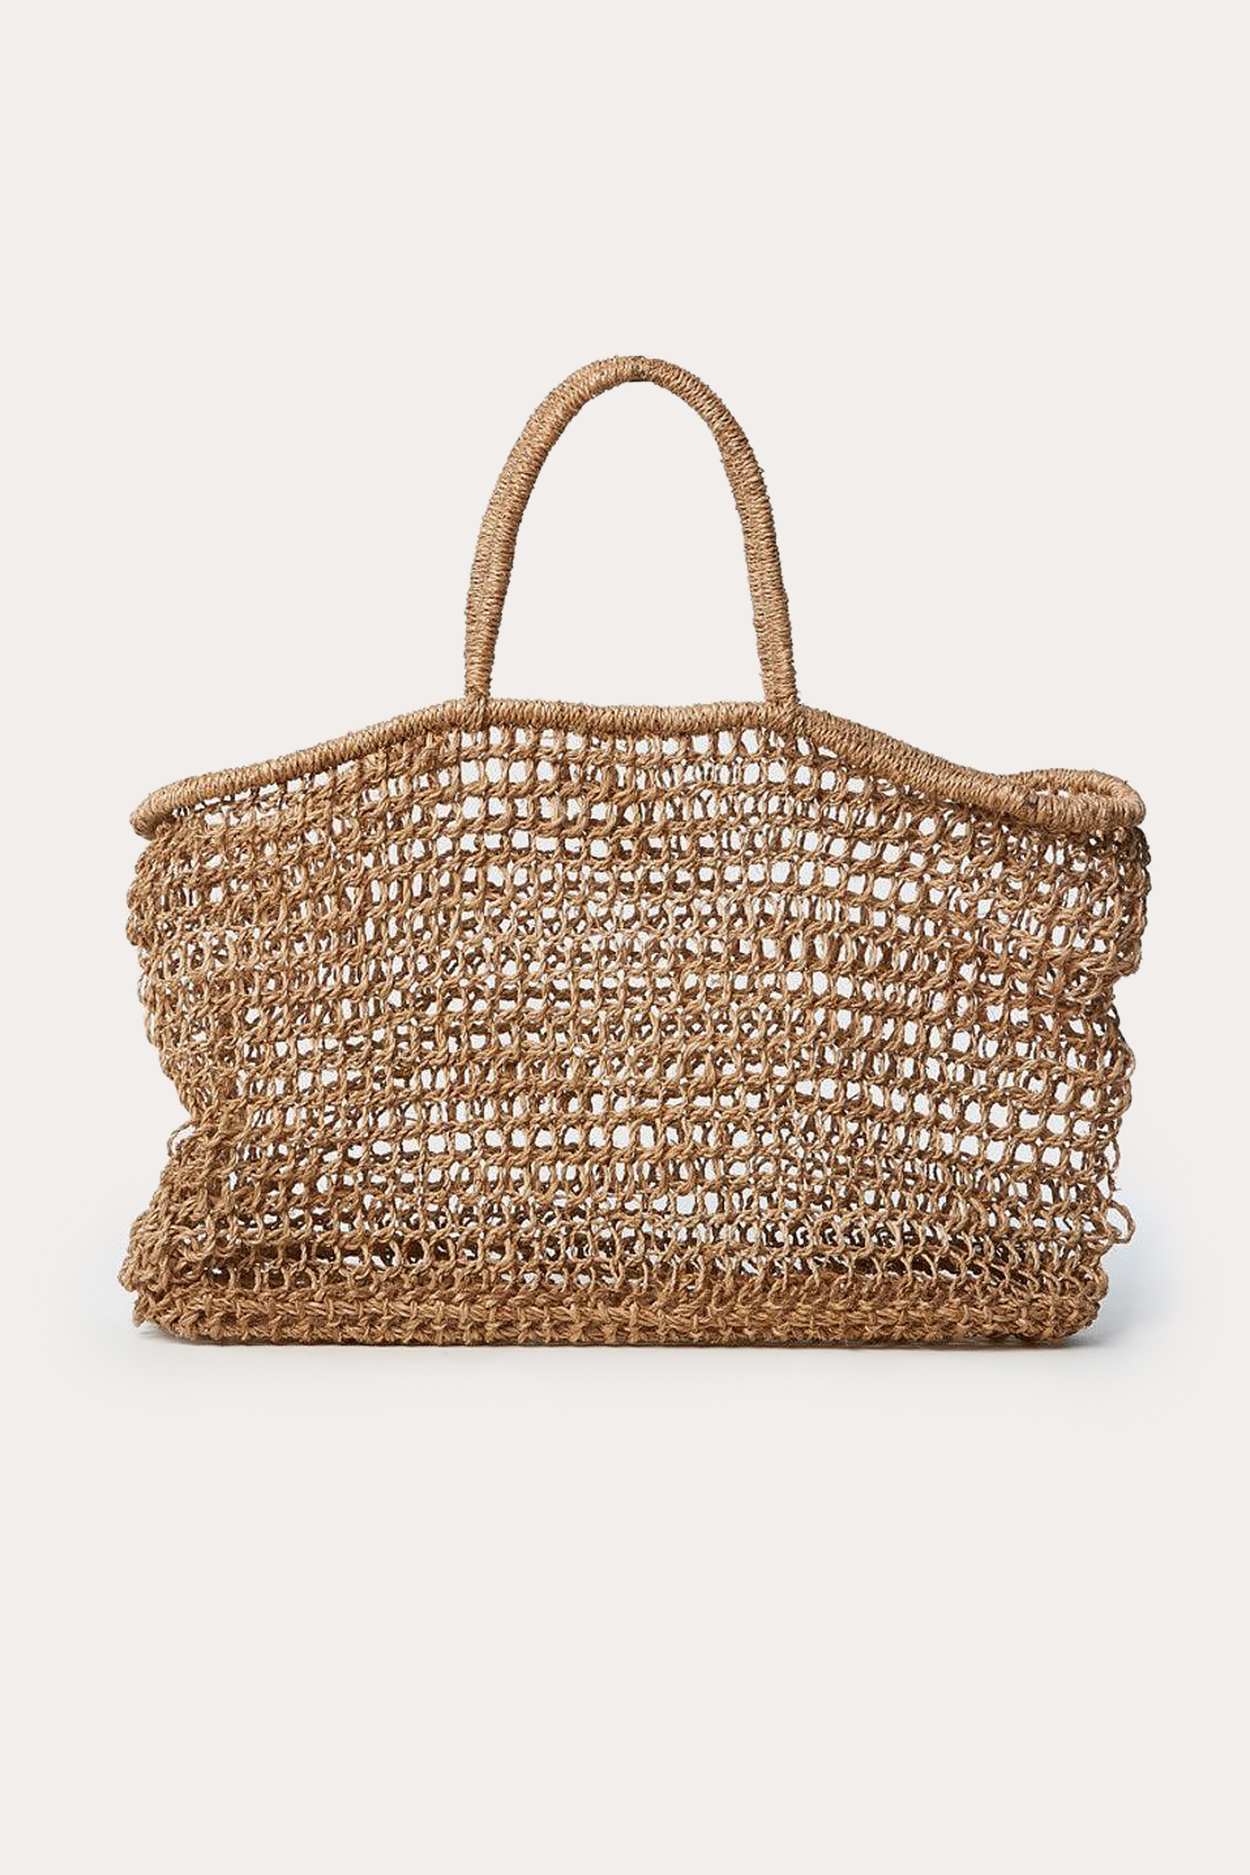 Allegra Natural Net Bag - Natural Net Bag